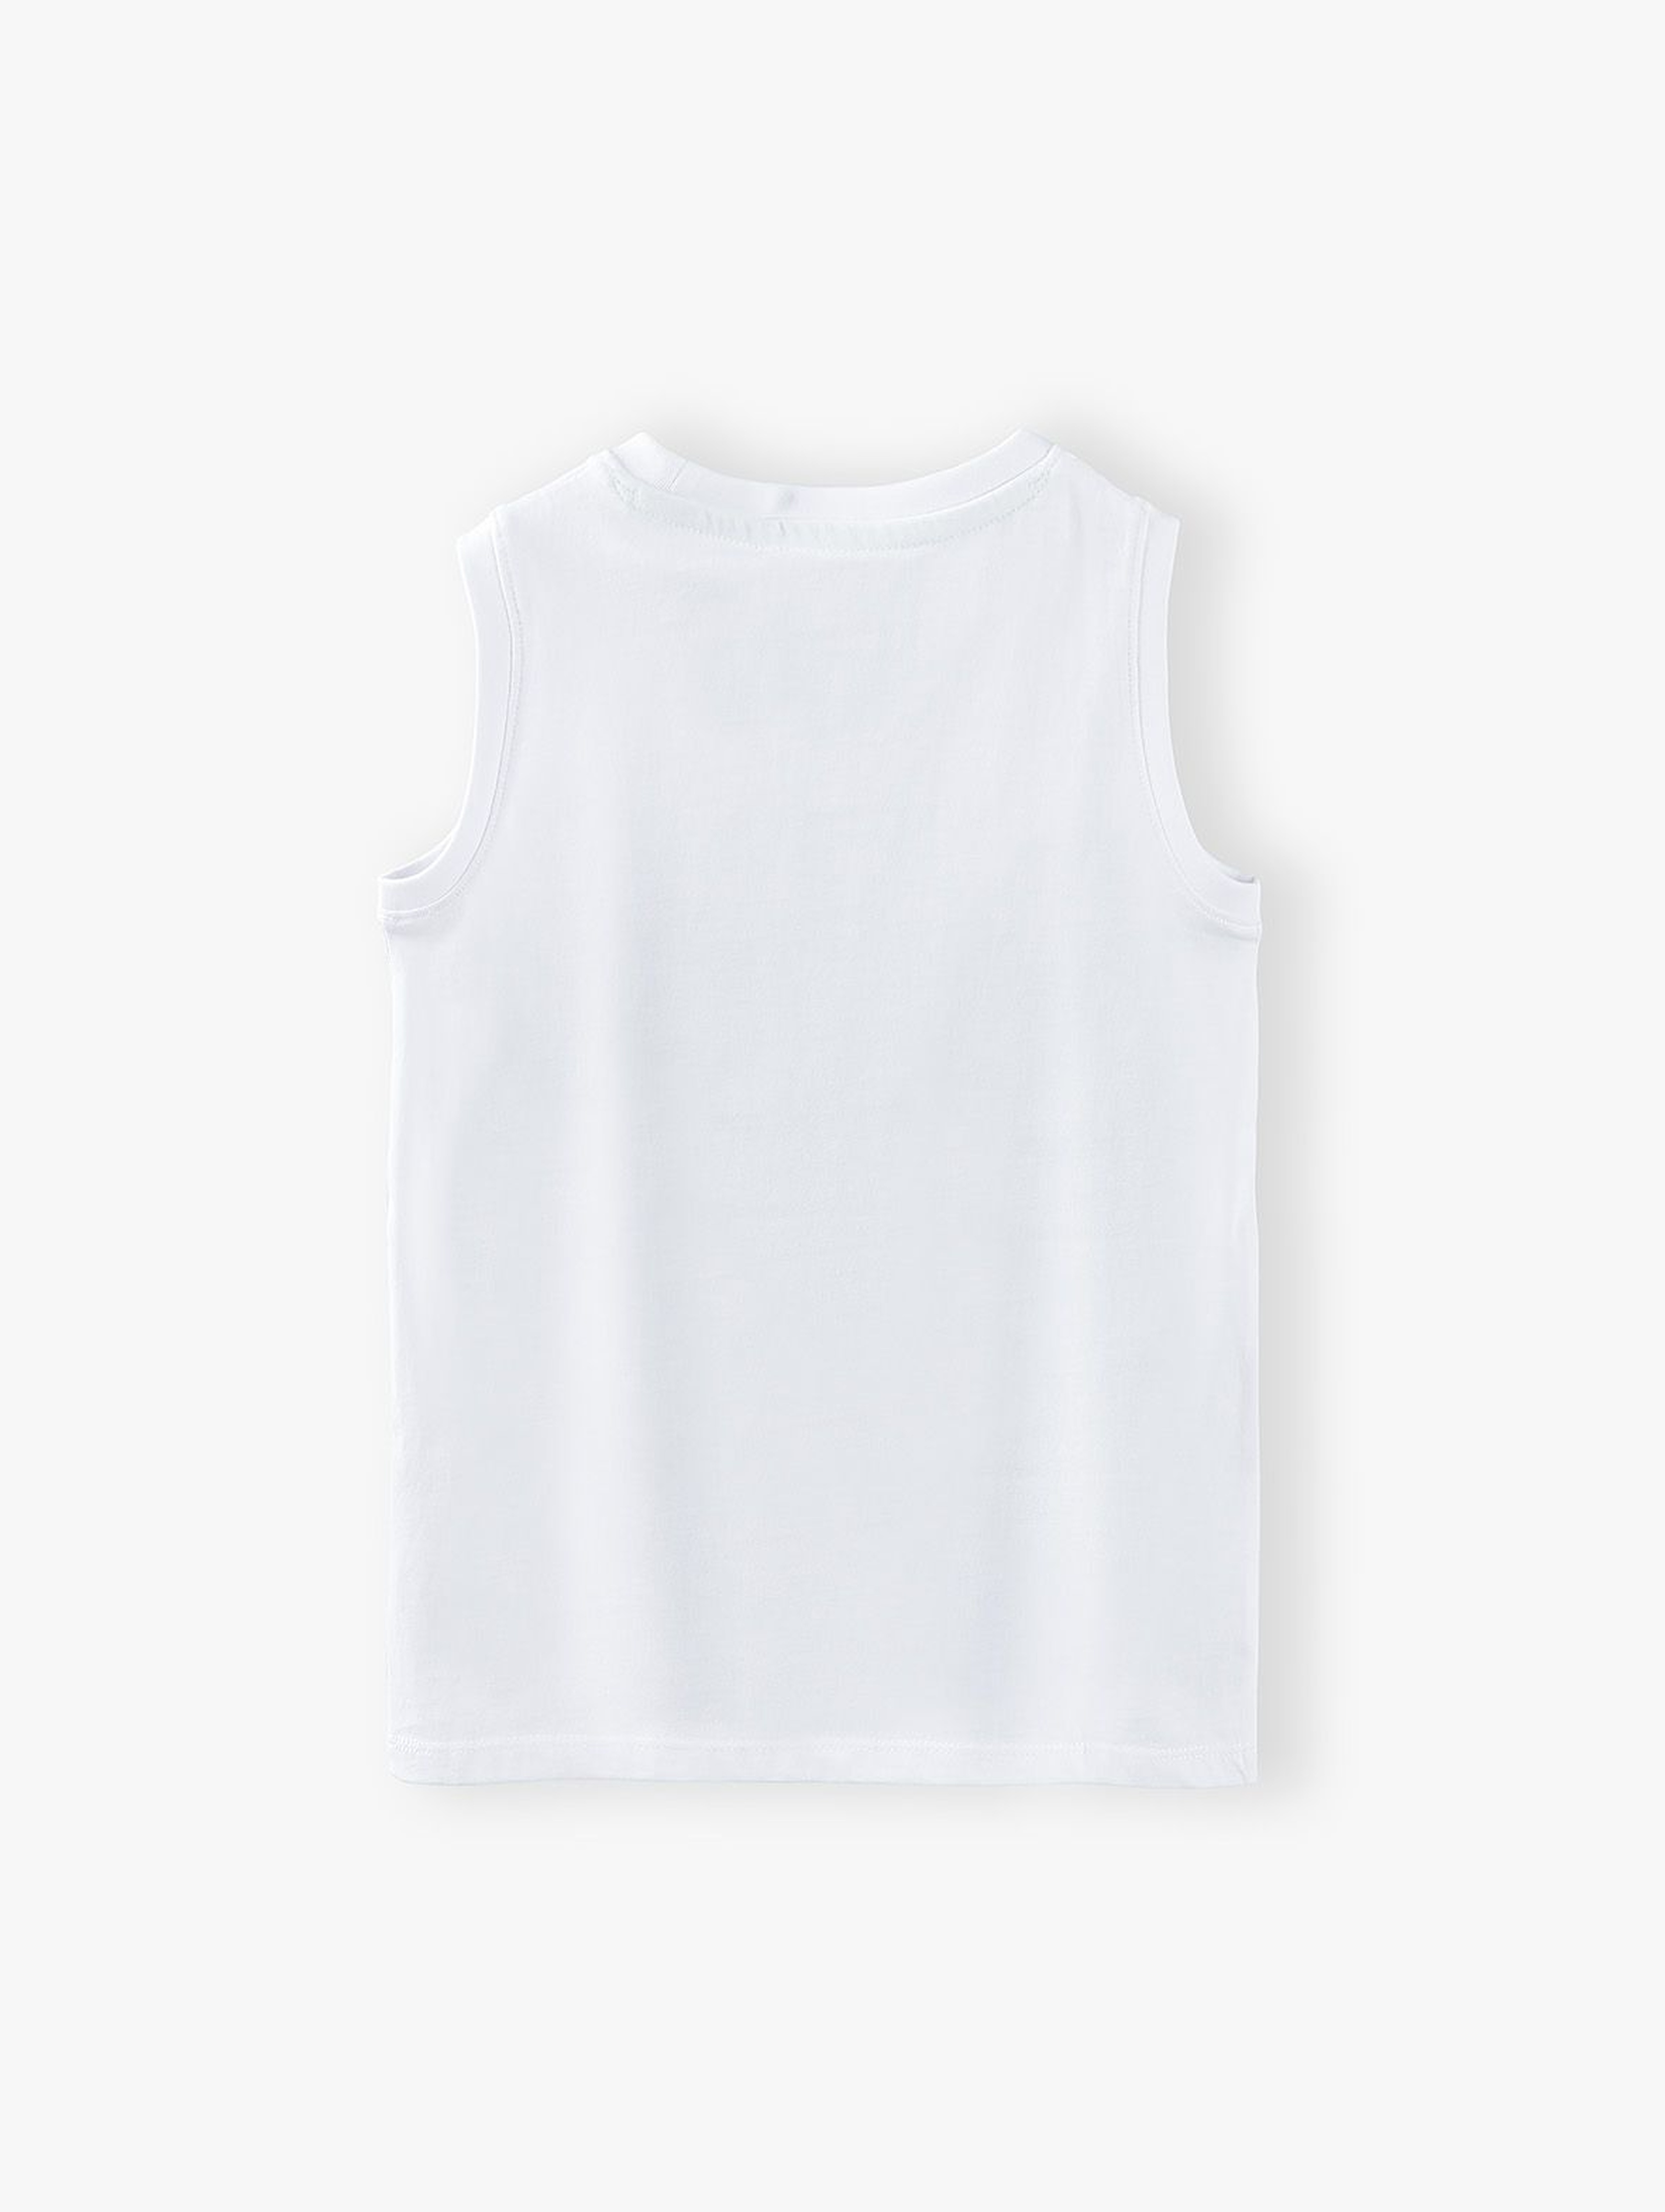 T-shirt chłopięcy w kolorze białym z napisem- Ale heheszki